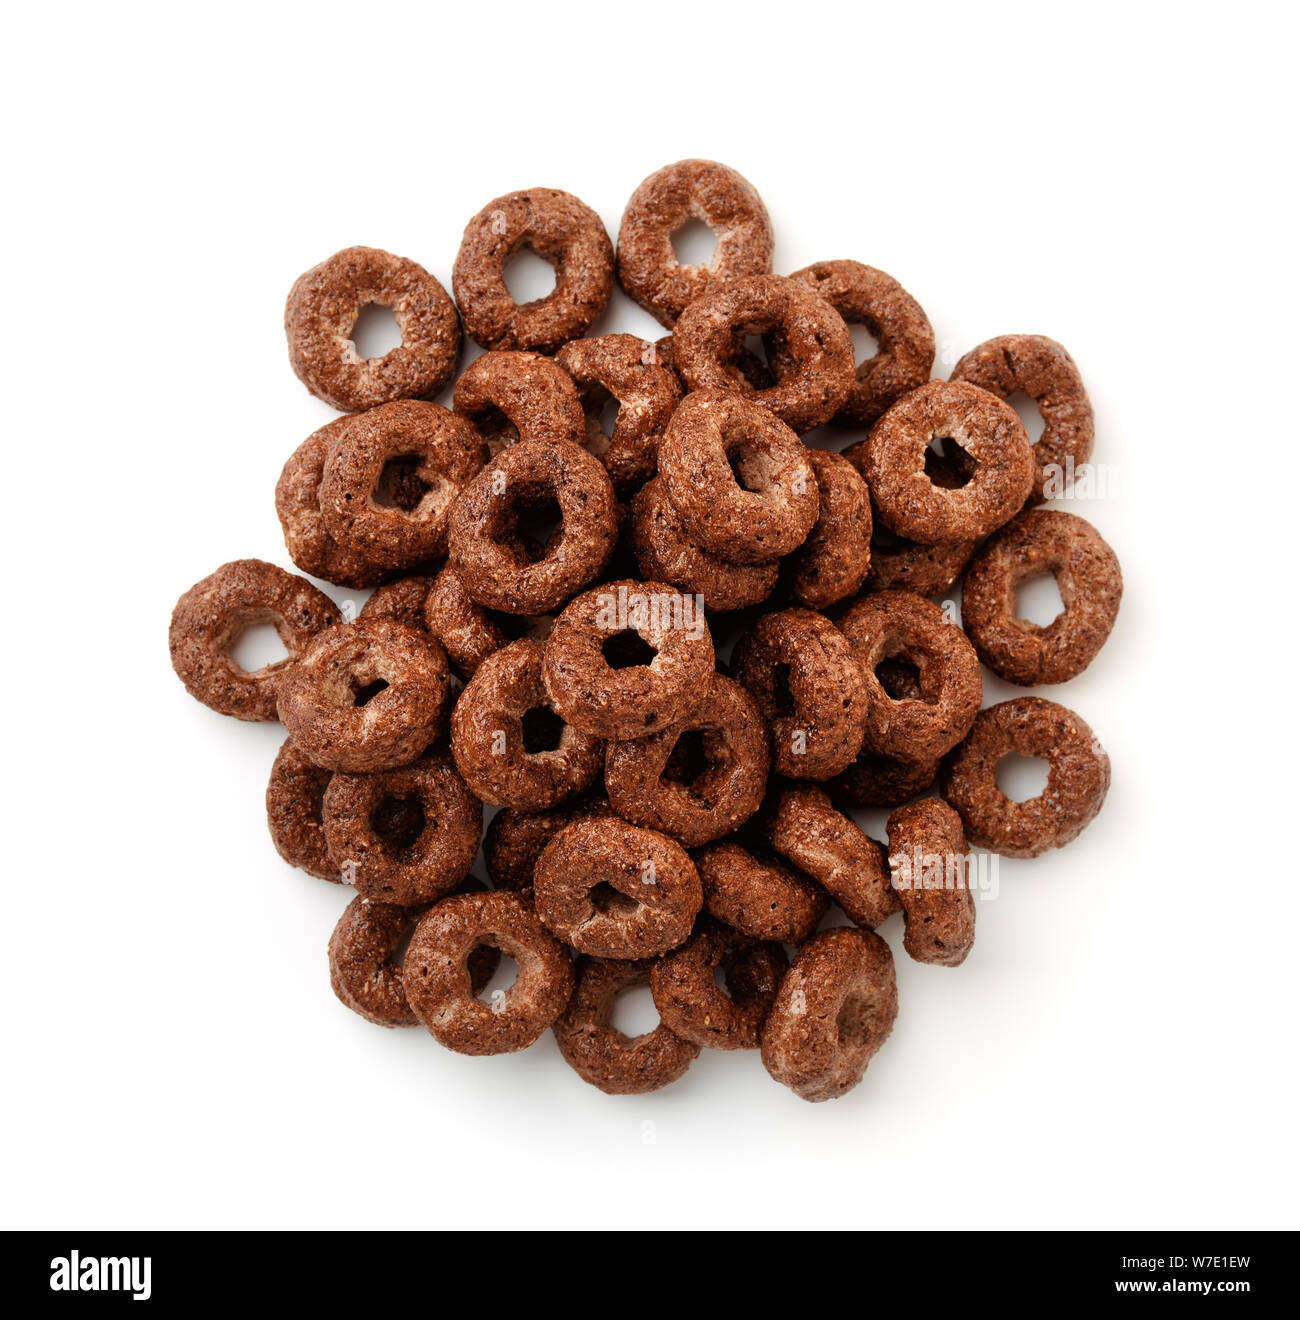 Vista superior del chocolate anillos de cereales aislado en blanco Foto de stock